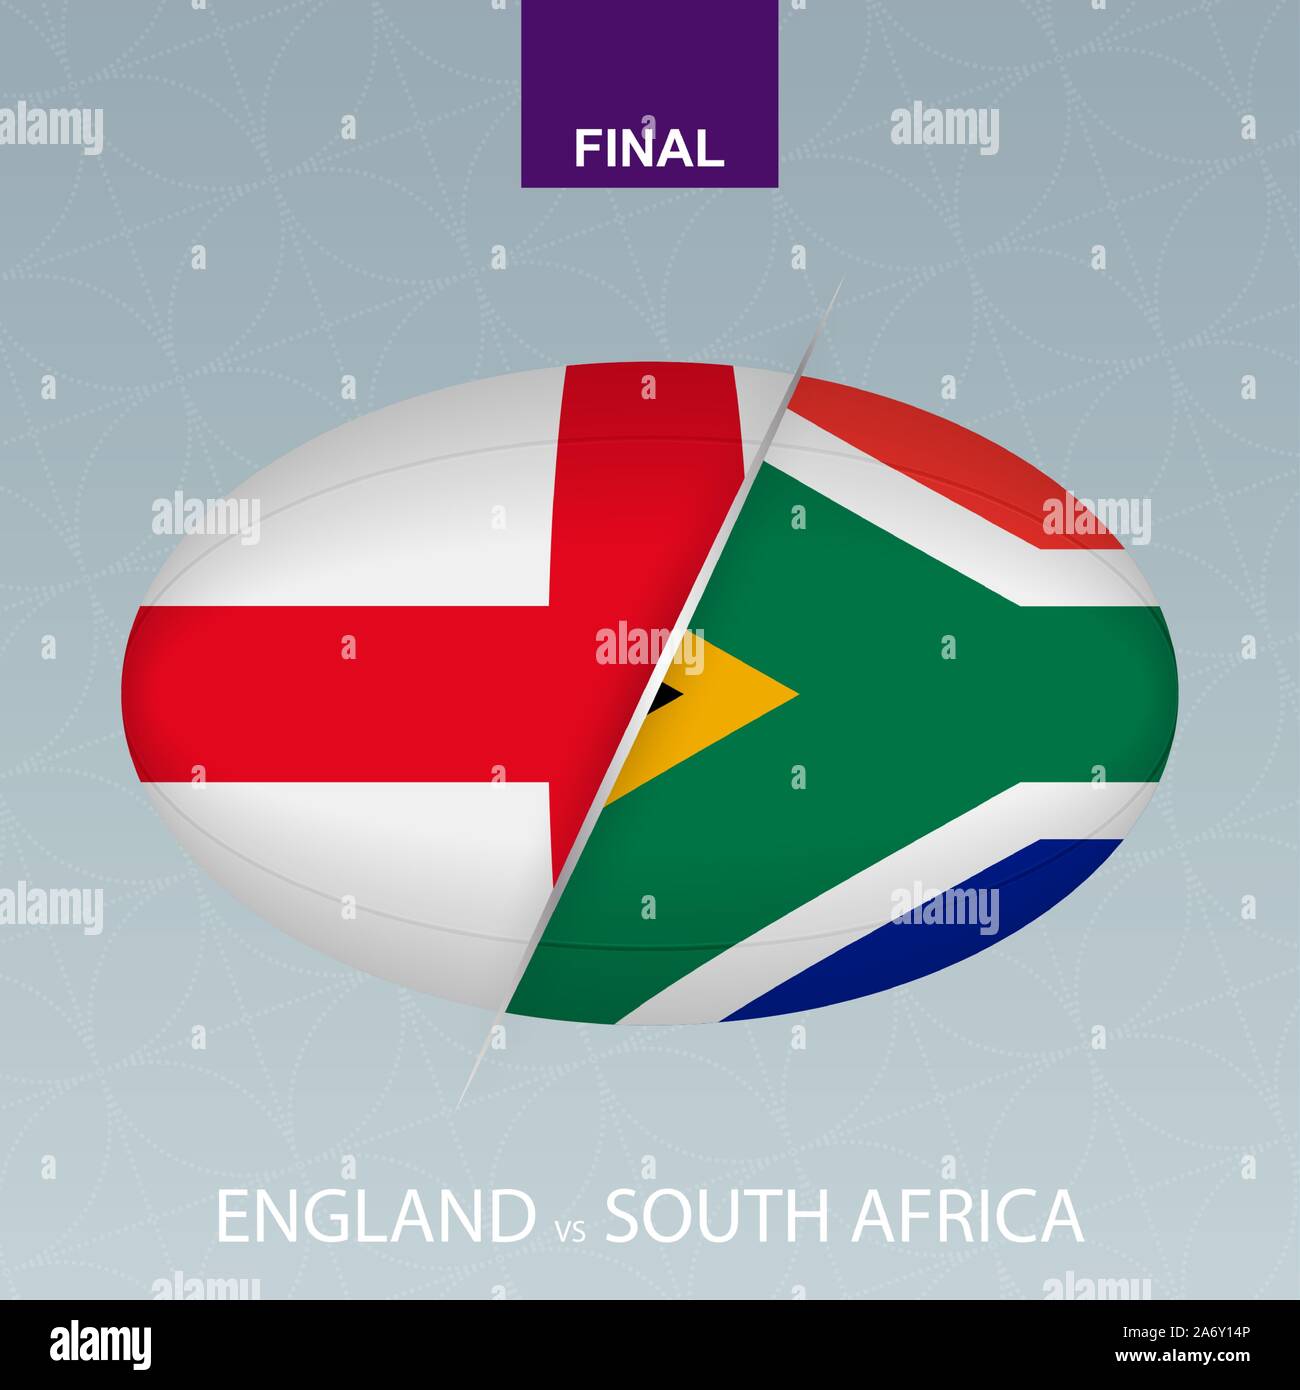 La compétition de rugby Angleterre contre l'Afrique du Sud. Rugby icône sur fond gris. Vector illustration. Illustration de Vecteur